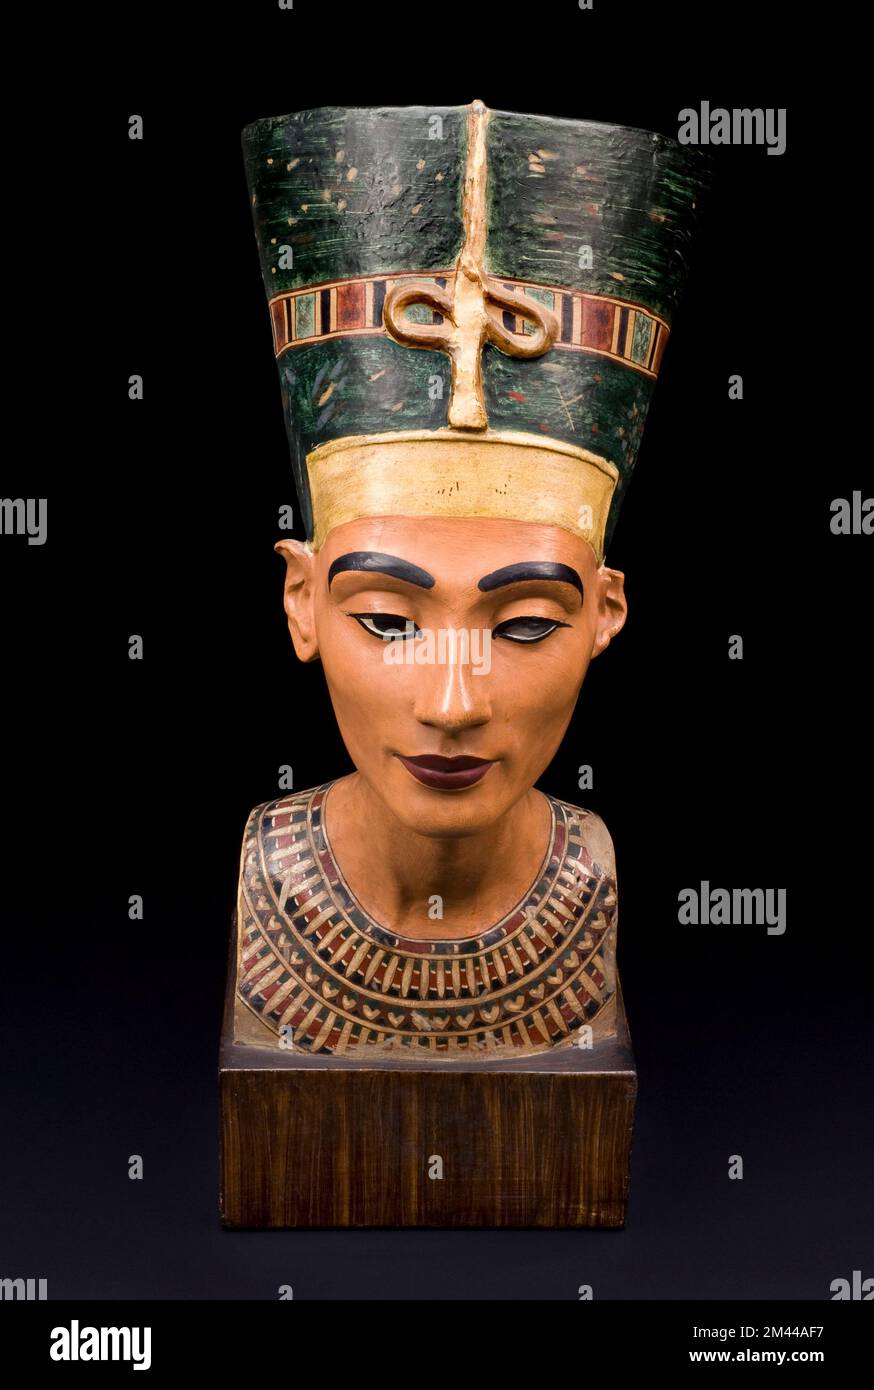 Büste von Königin Nefertiti - Ägypten 1912-1928- Königin Nefertiti war die Gemahlin des pharaos Akhenaton, Vater von Tutanchamun. Sie war berühmt für ihre Schönheit. Das Original dieser Büste von Nefertiti stammt aus der Dynastie von 18. (ca. 1383-1365BCE). Es wurde 1912 in Amatha, Ägypten, gefunden. Dies ist eine Gipskopie des Originals, das jetzt im Ägyptischen Museum in Berlin untergebracht ist. Make-up wurde häufig im alten Ägypten verwendet. Es konzentrierte sich auf das Auge. Kohl Eyeliner wurde häufig verwendet, um das Aussehen des sonnengottes Re oder des Auges von Horus zu replizieren, von dem angenommen wurde, dass es seinen Trägern Schutz bietet. Stockfoto